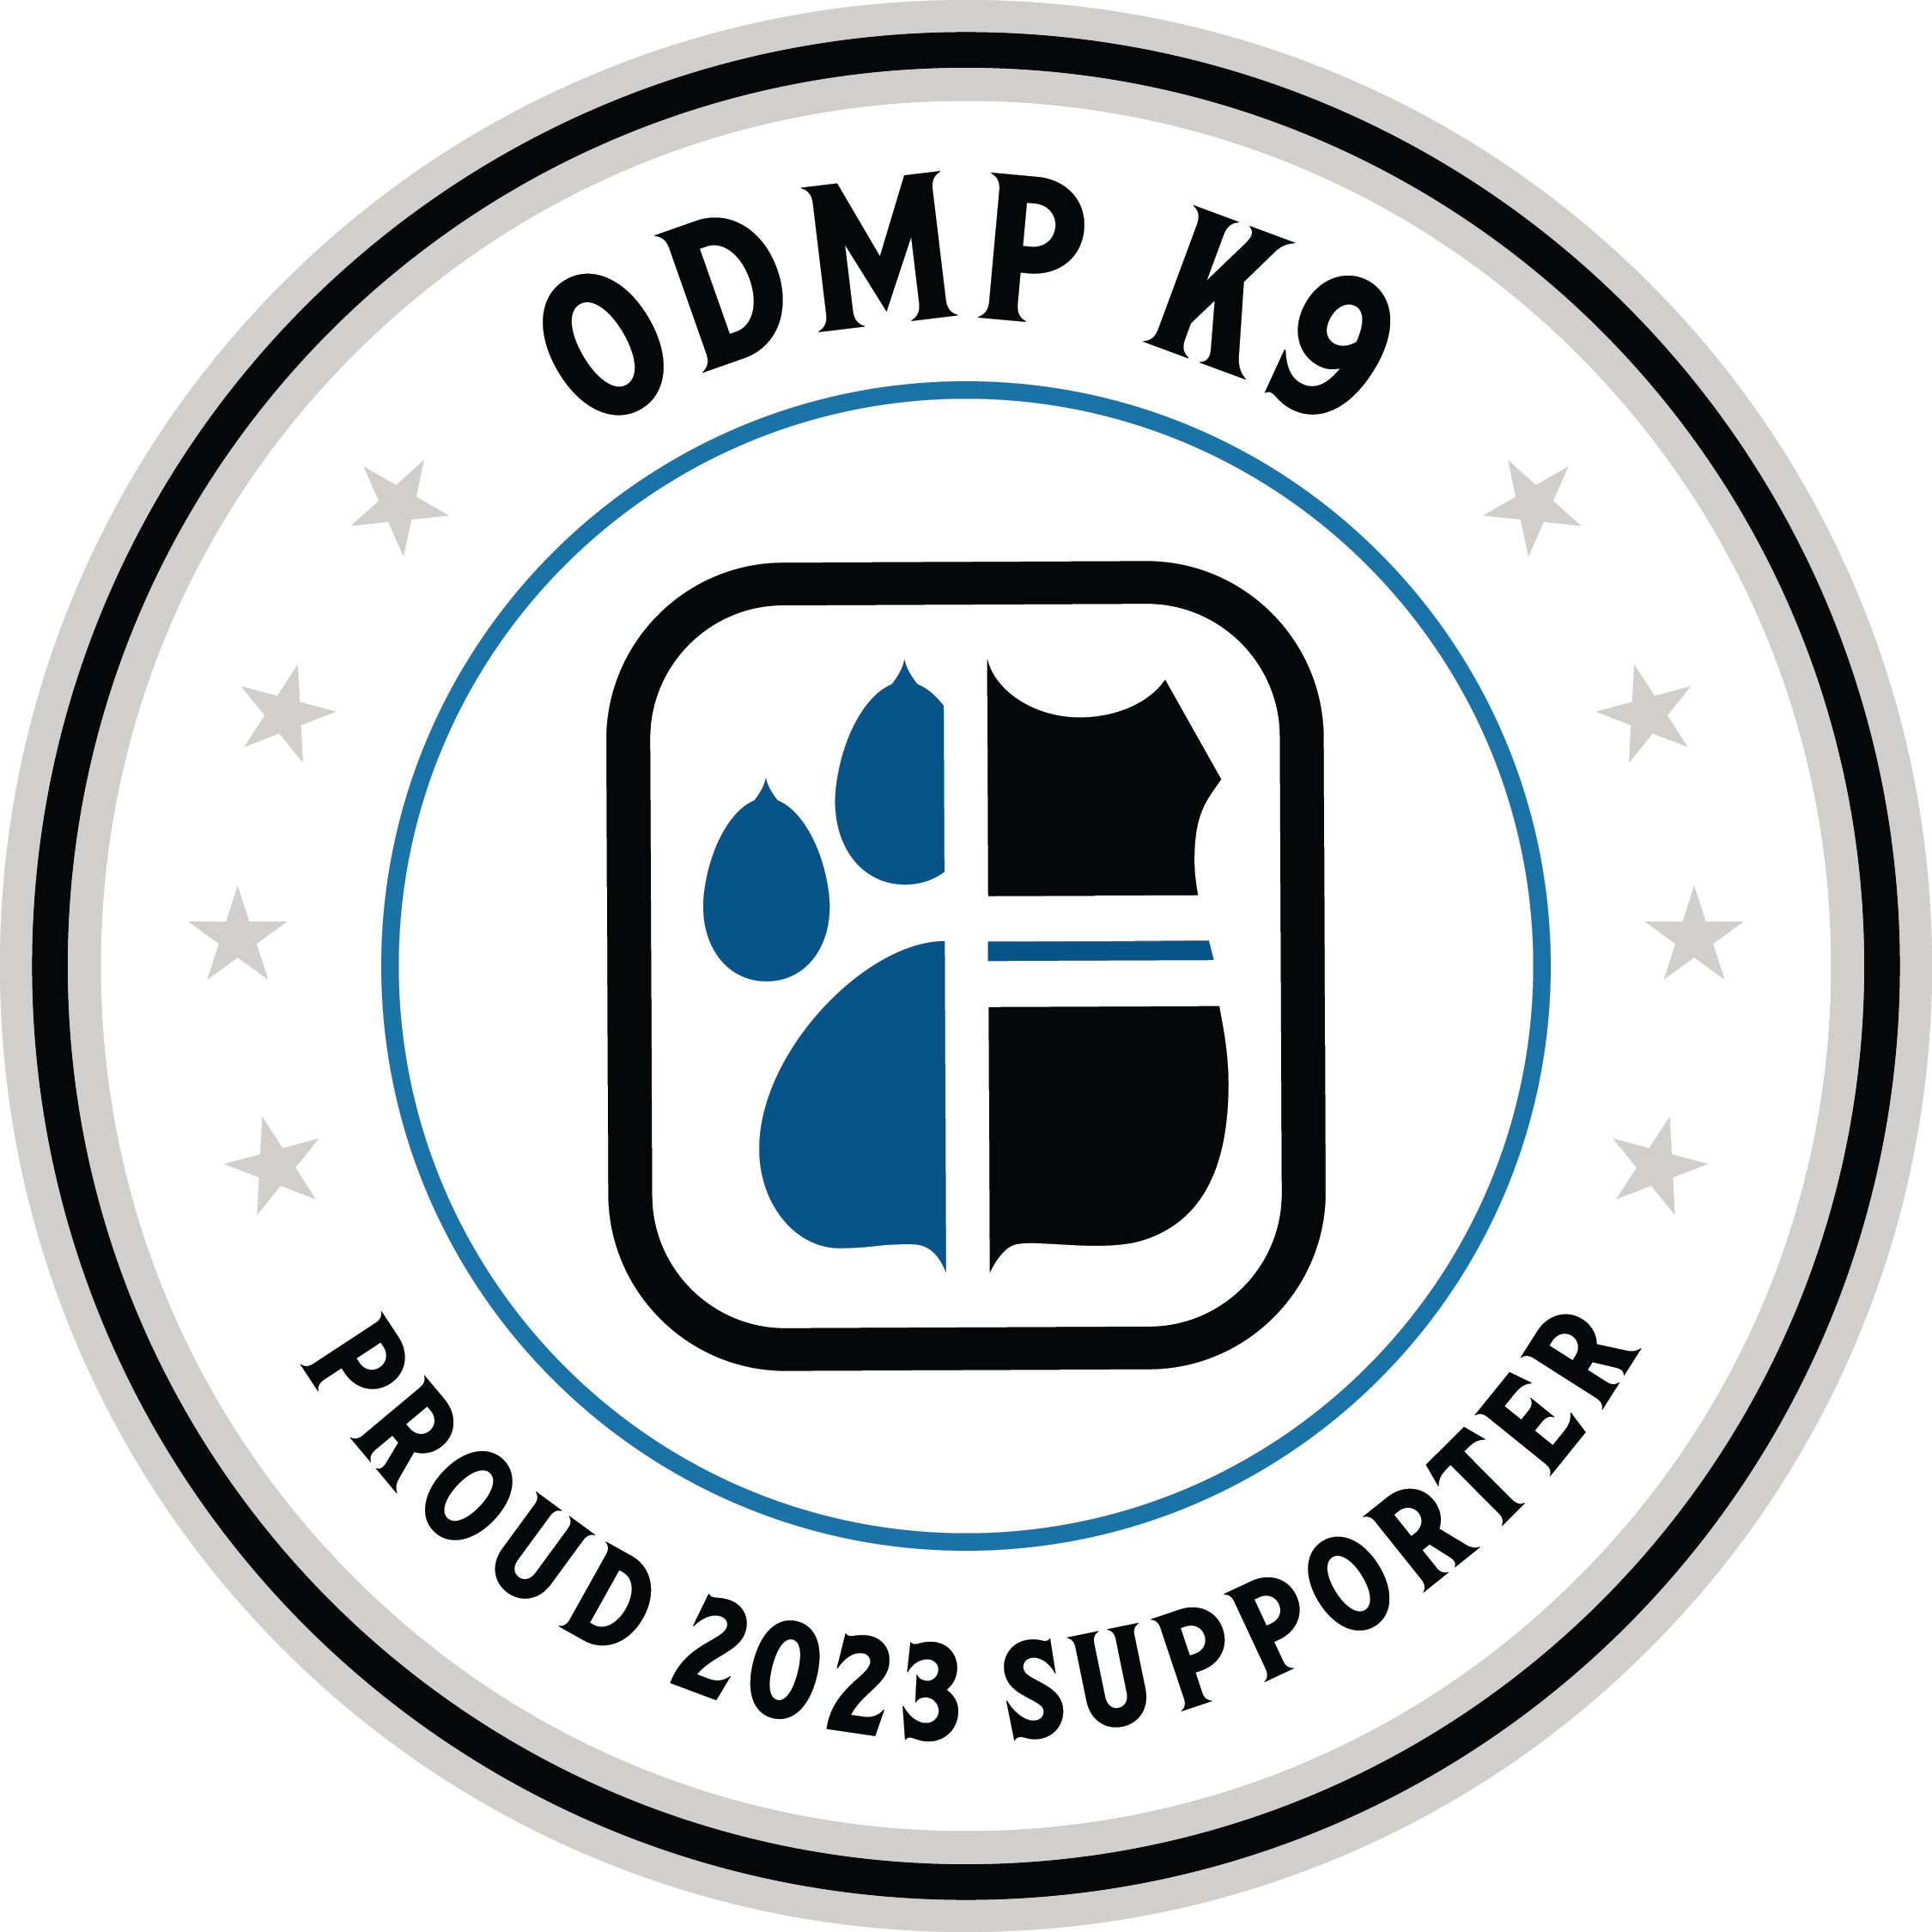 Get your ODMP K9 Decals